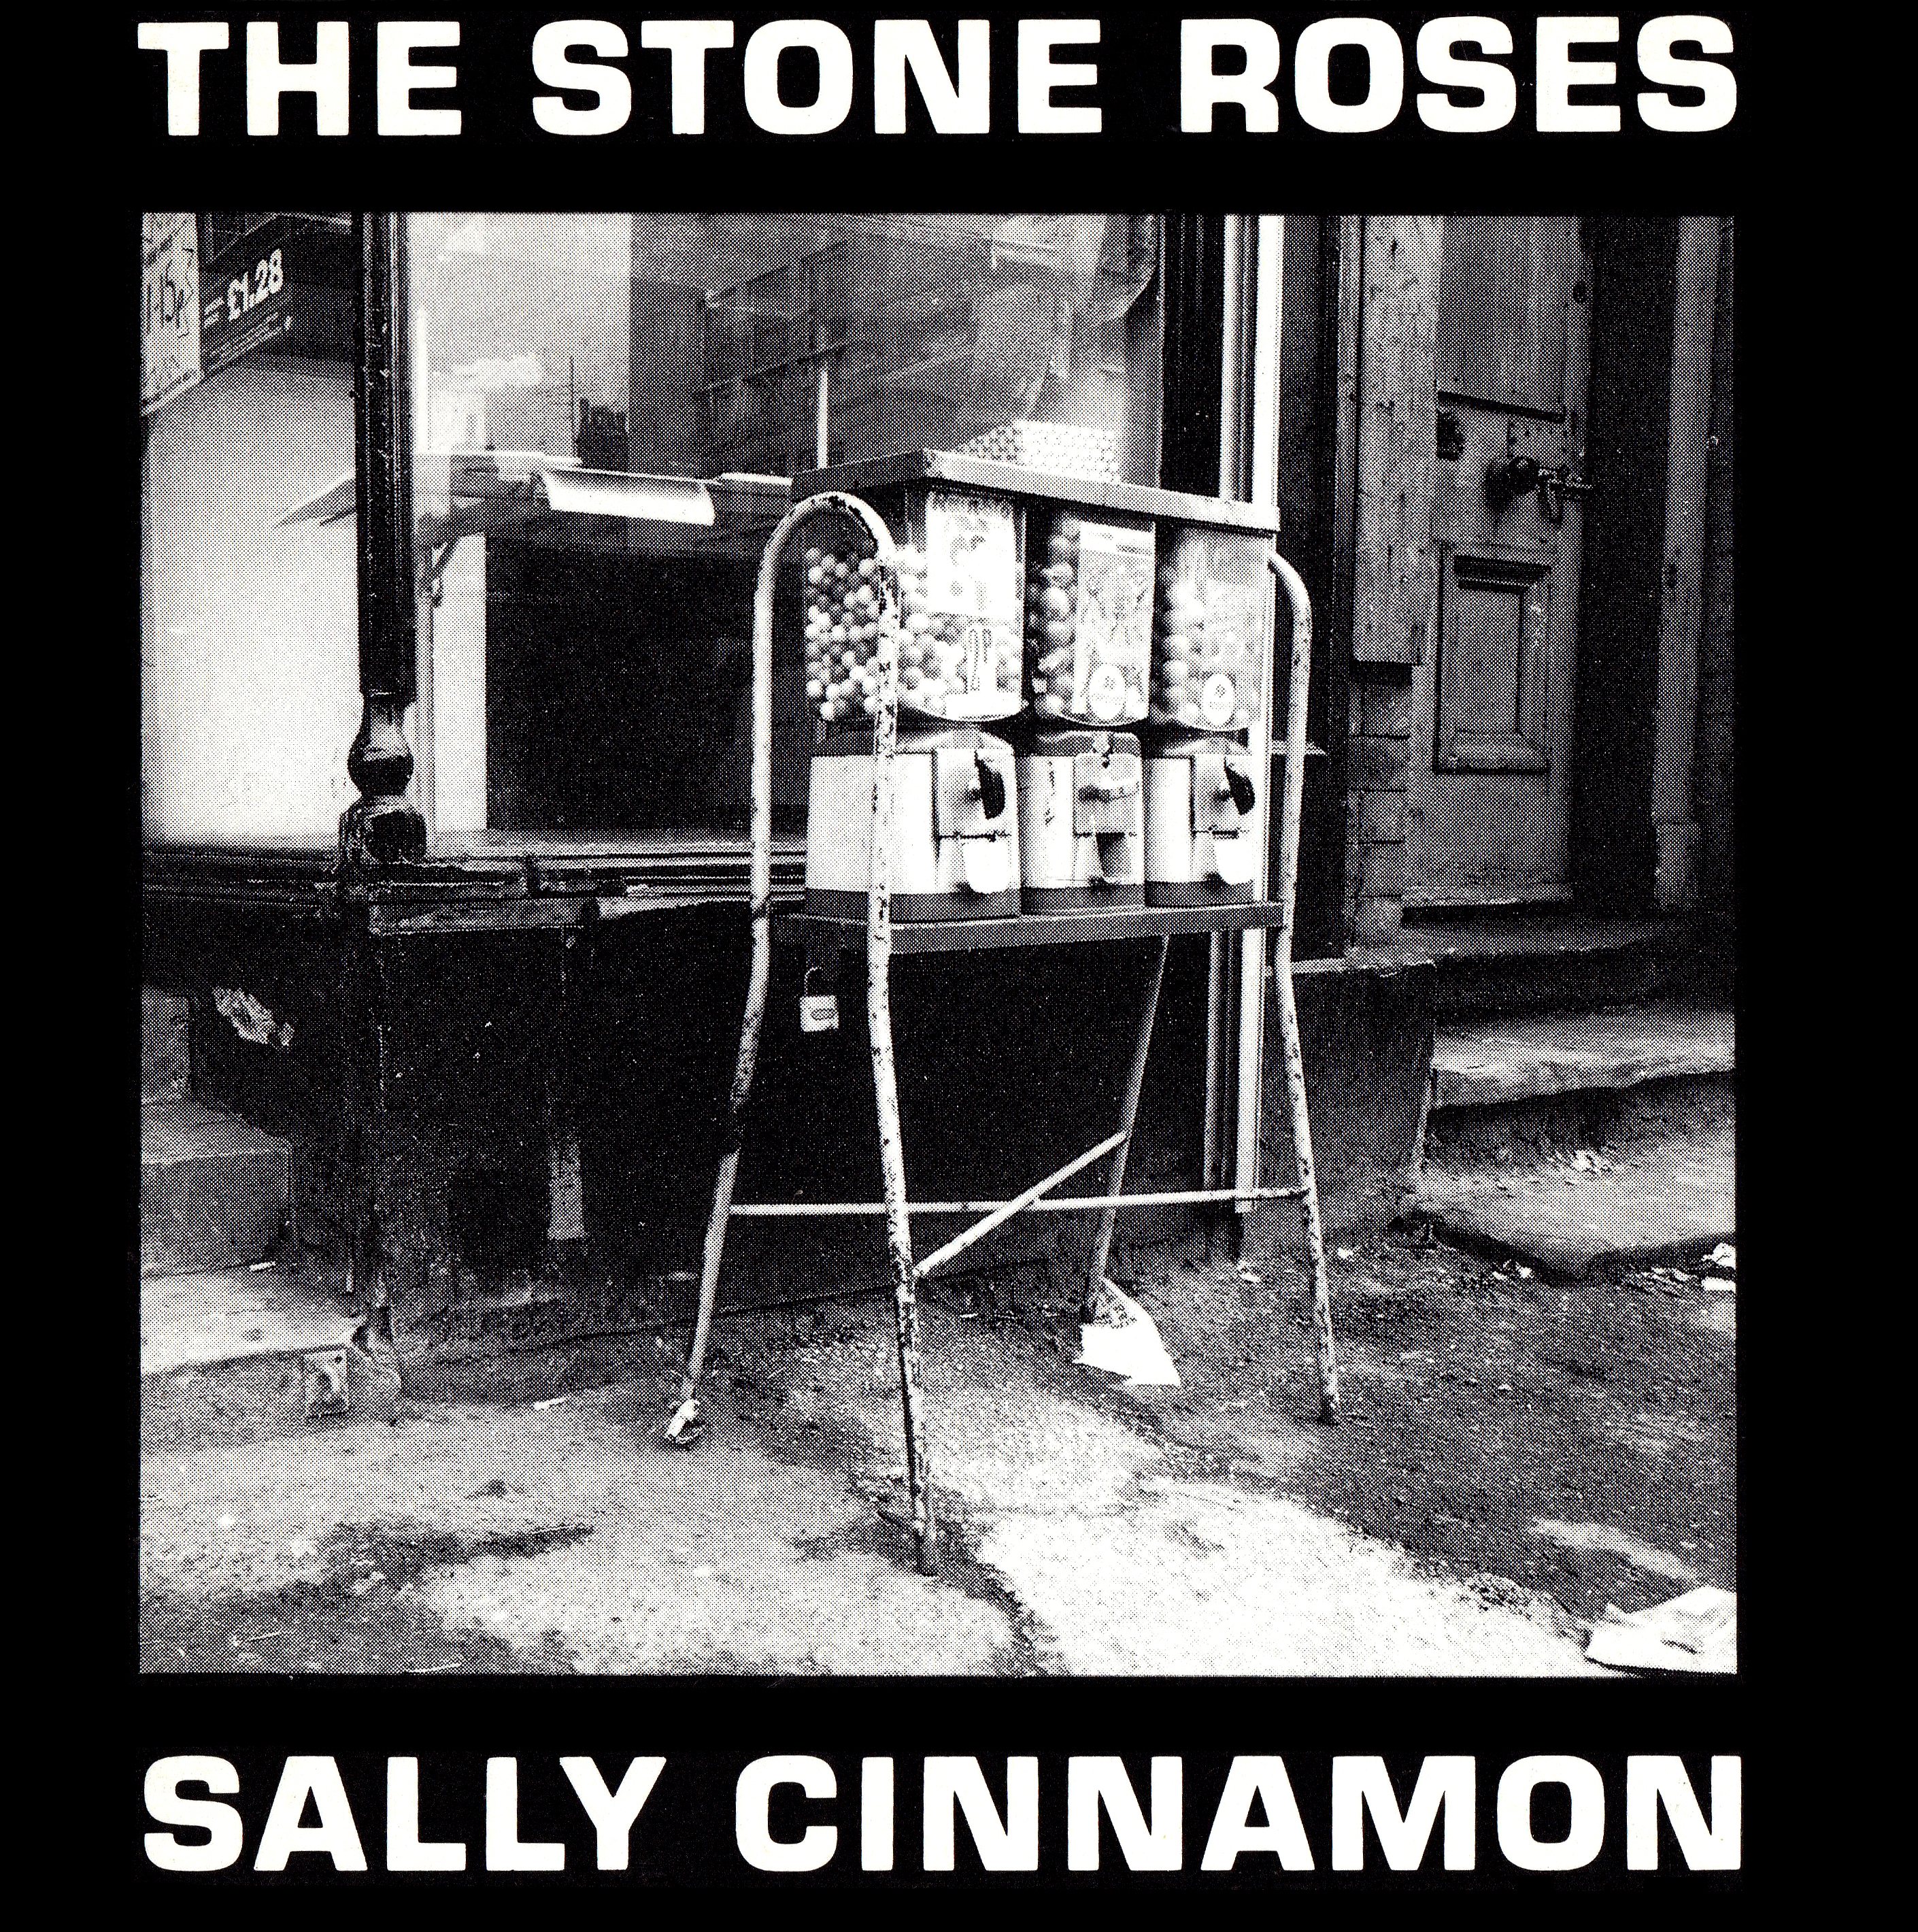 THE STONE ROSES (ザ・ストーン・ローゼス) 2ndシングル『SALLY CINNAMON (サリー・シナモン)』(1991年7月21日発売) 高画質ジャケット画像